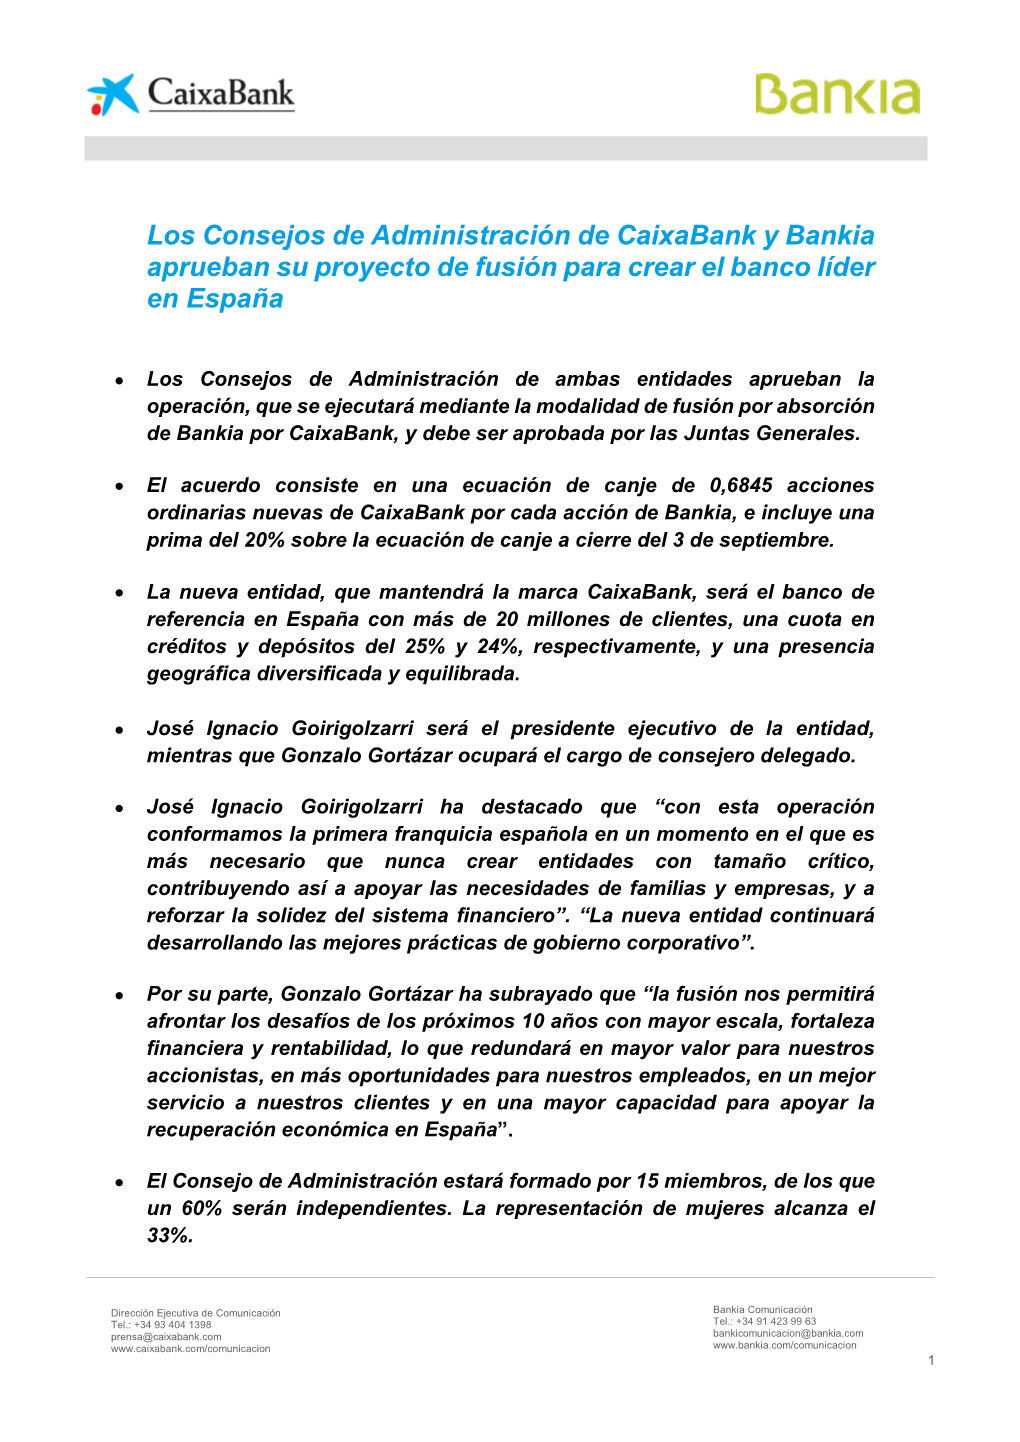 Los Consejos De Administración De Caixabank Y Bankia Aprueban Su Proyecto De Fusión Para Crear El Banco Líder En España